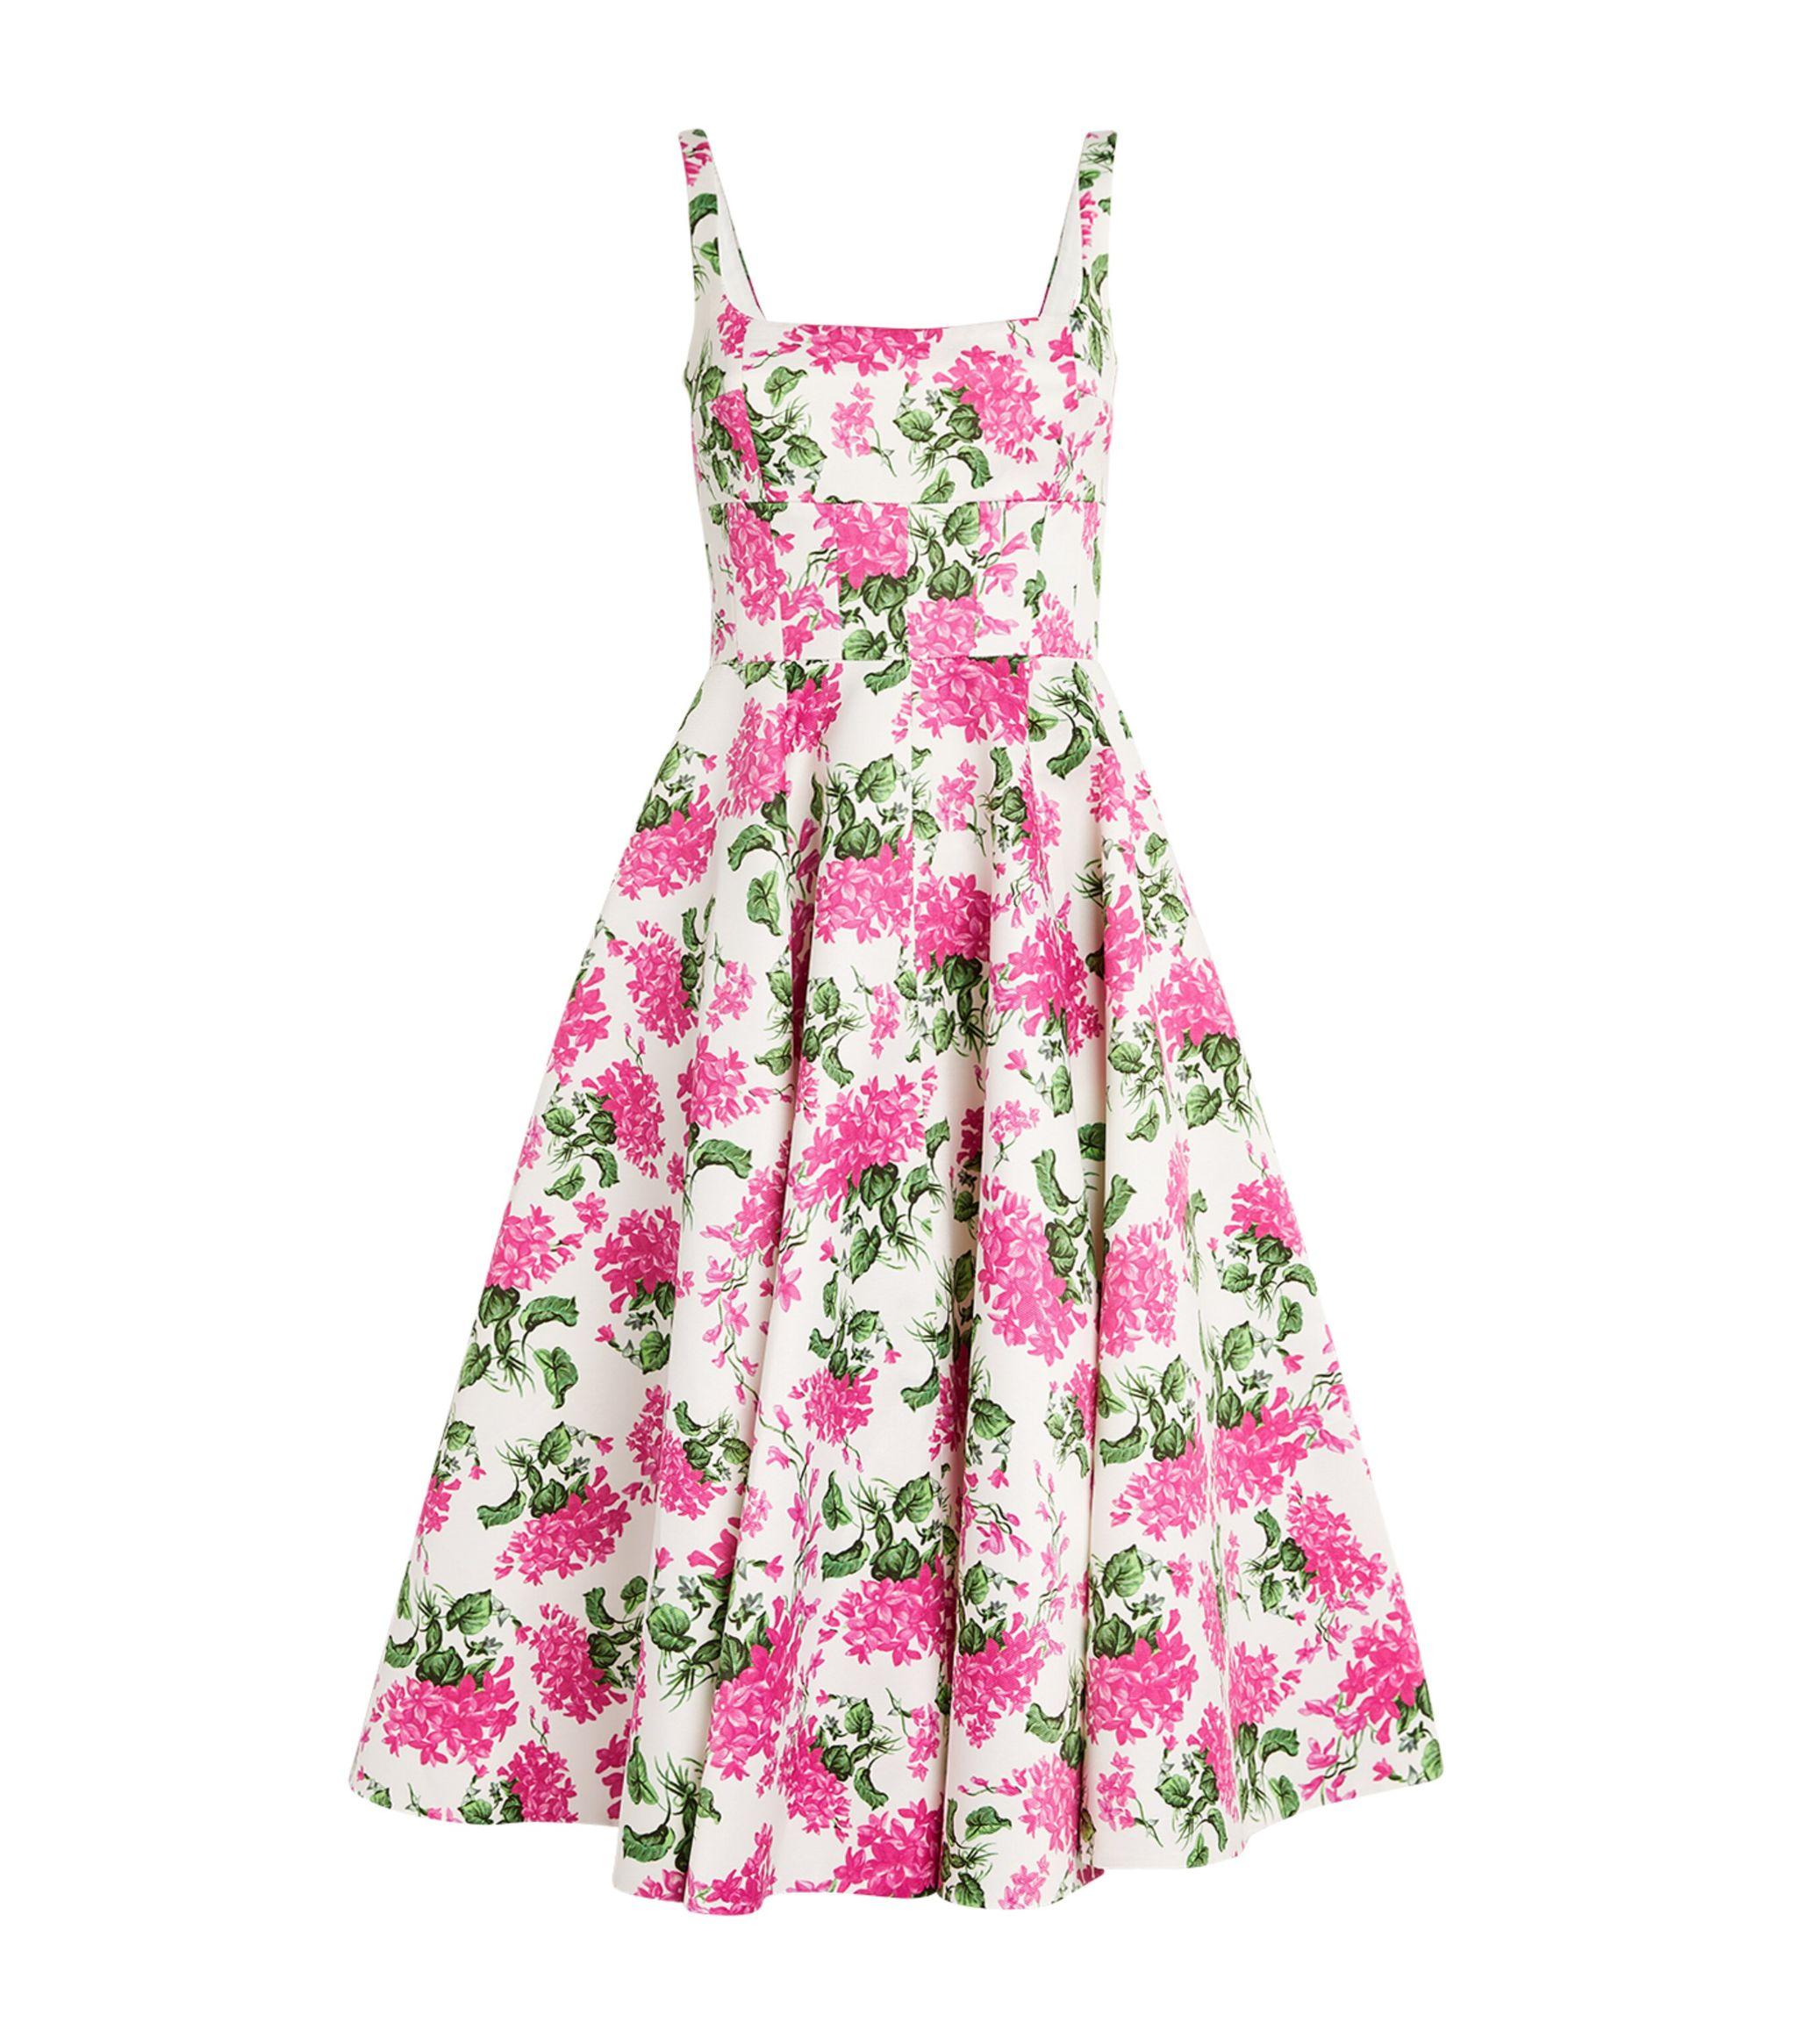 Emilia Wickstead Floral Print Midi Dress in Pink | Lyst